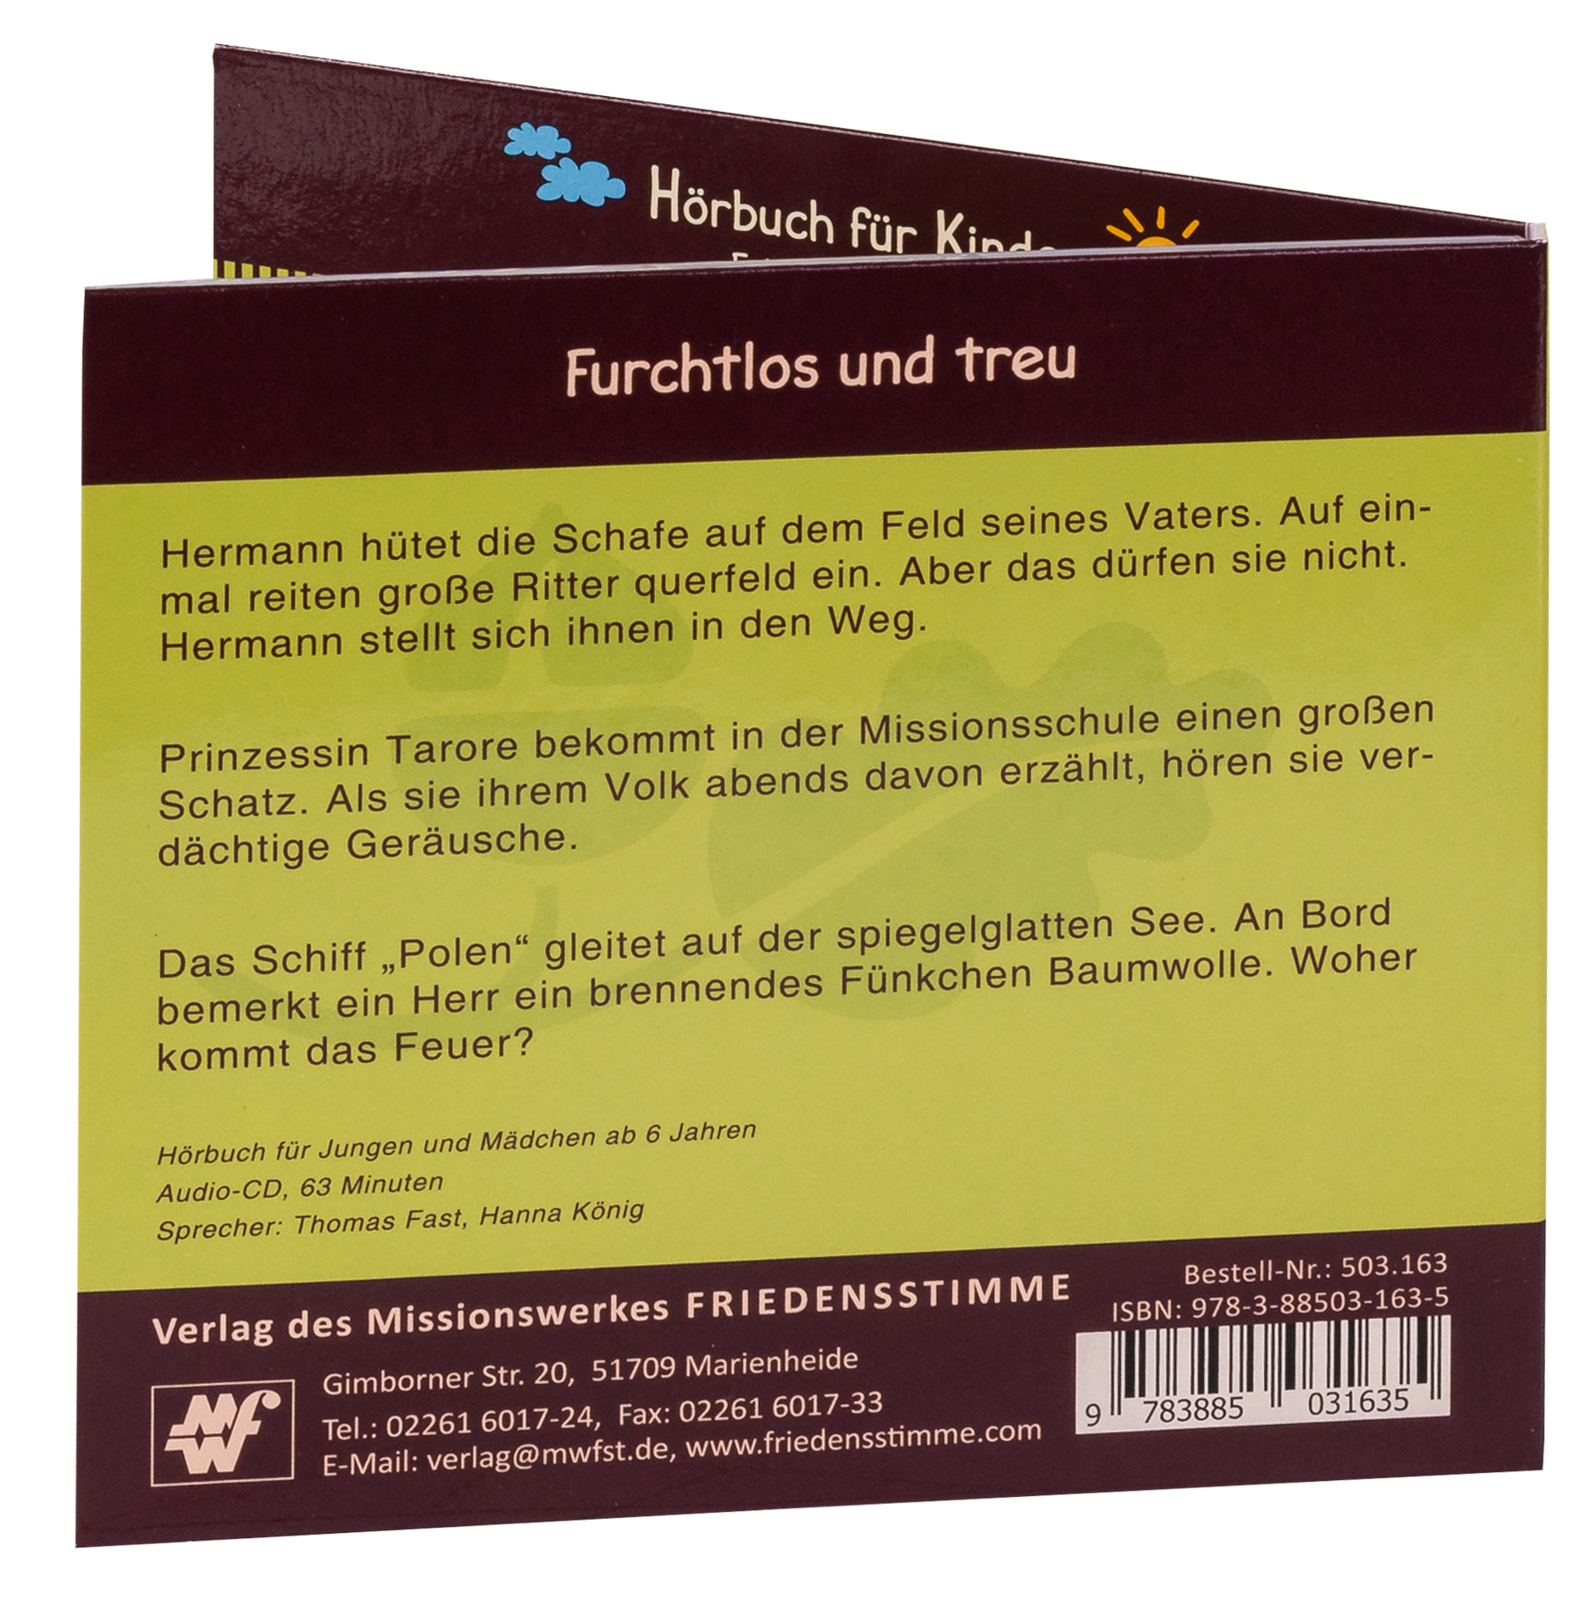 Hörbuch CD - Furchtlos und treu